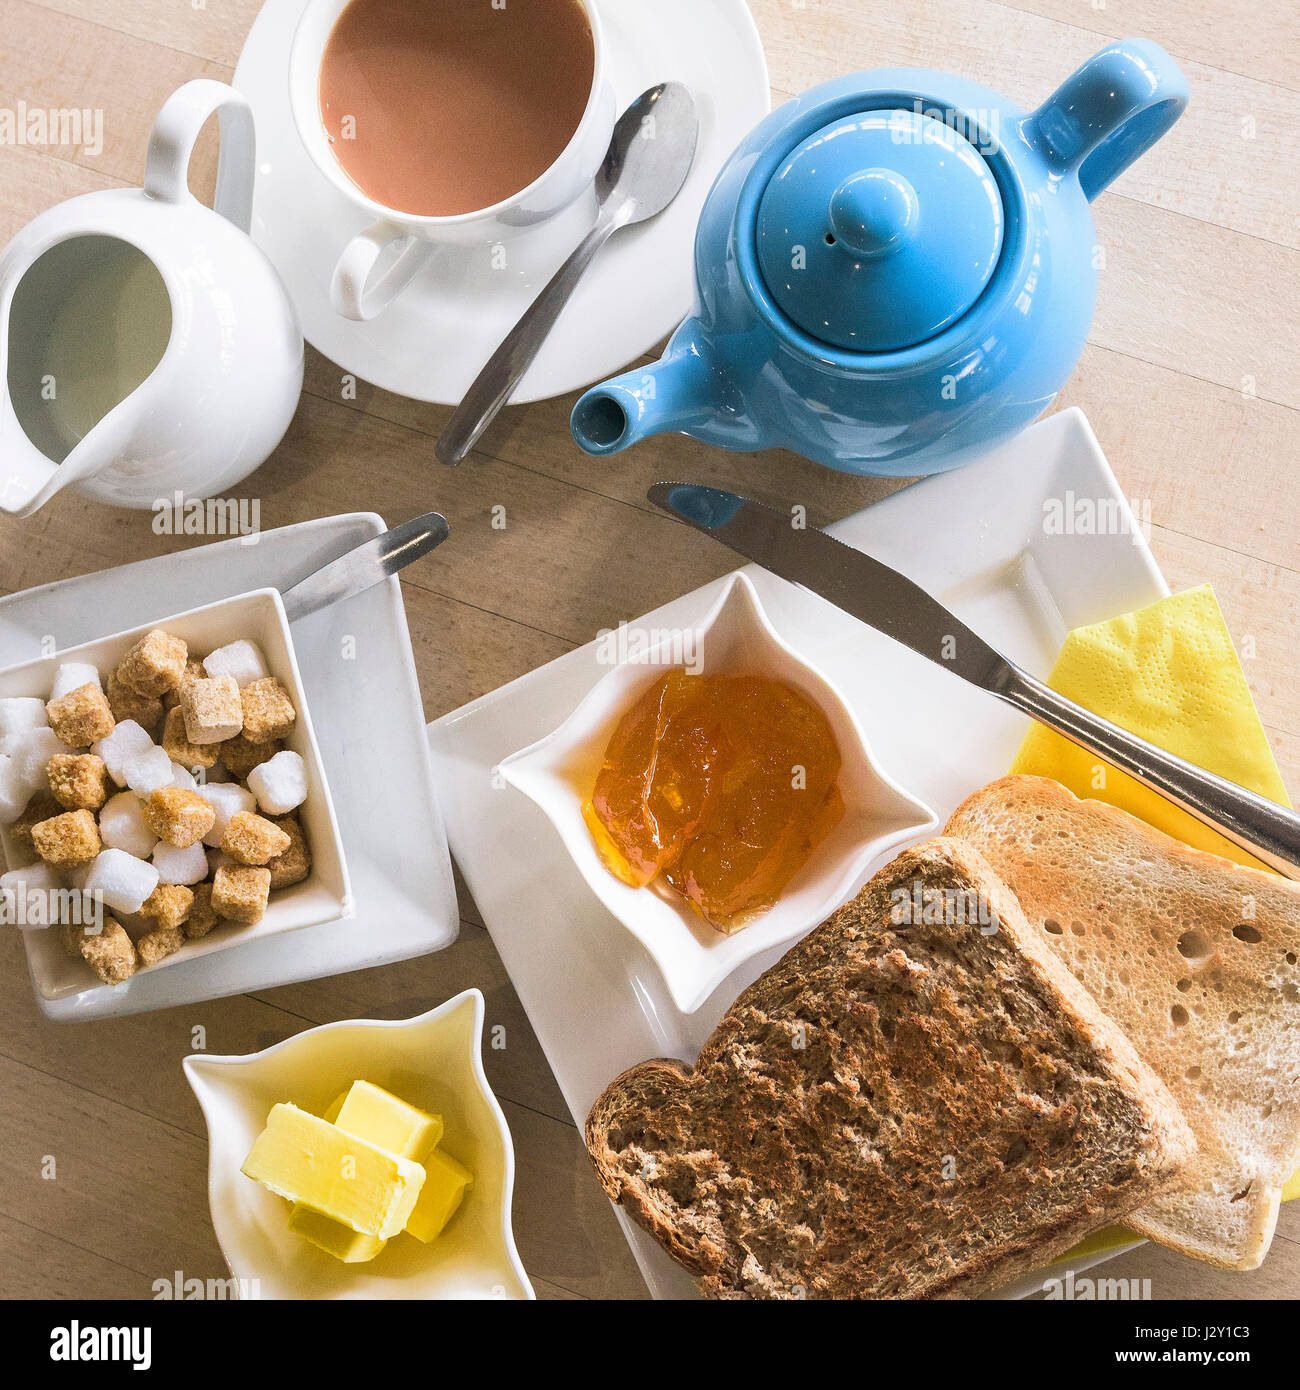 Piatti per la colazione tè toast e marmellata fette biscottate teiera stoviglie pasto mattutino; ristorante Cafe vista aerea Foto Stock